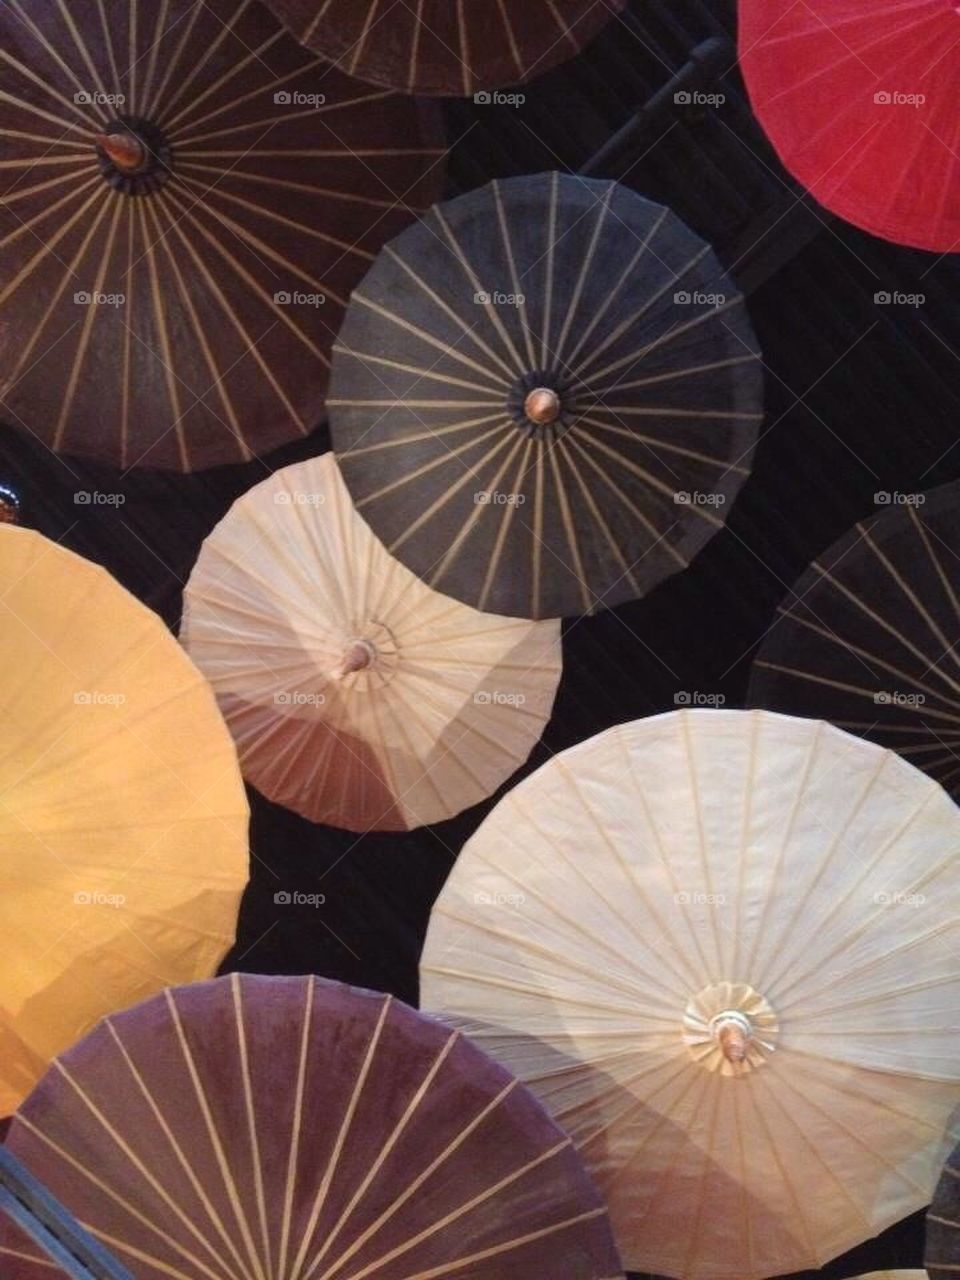 Umbrella party